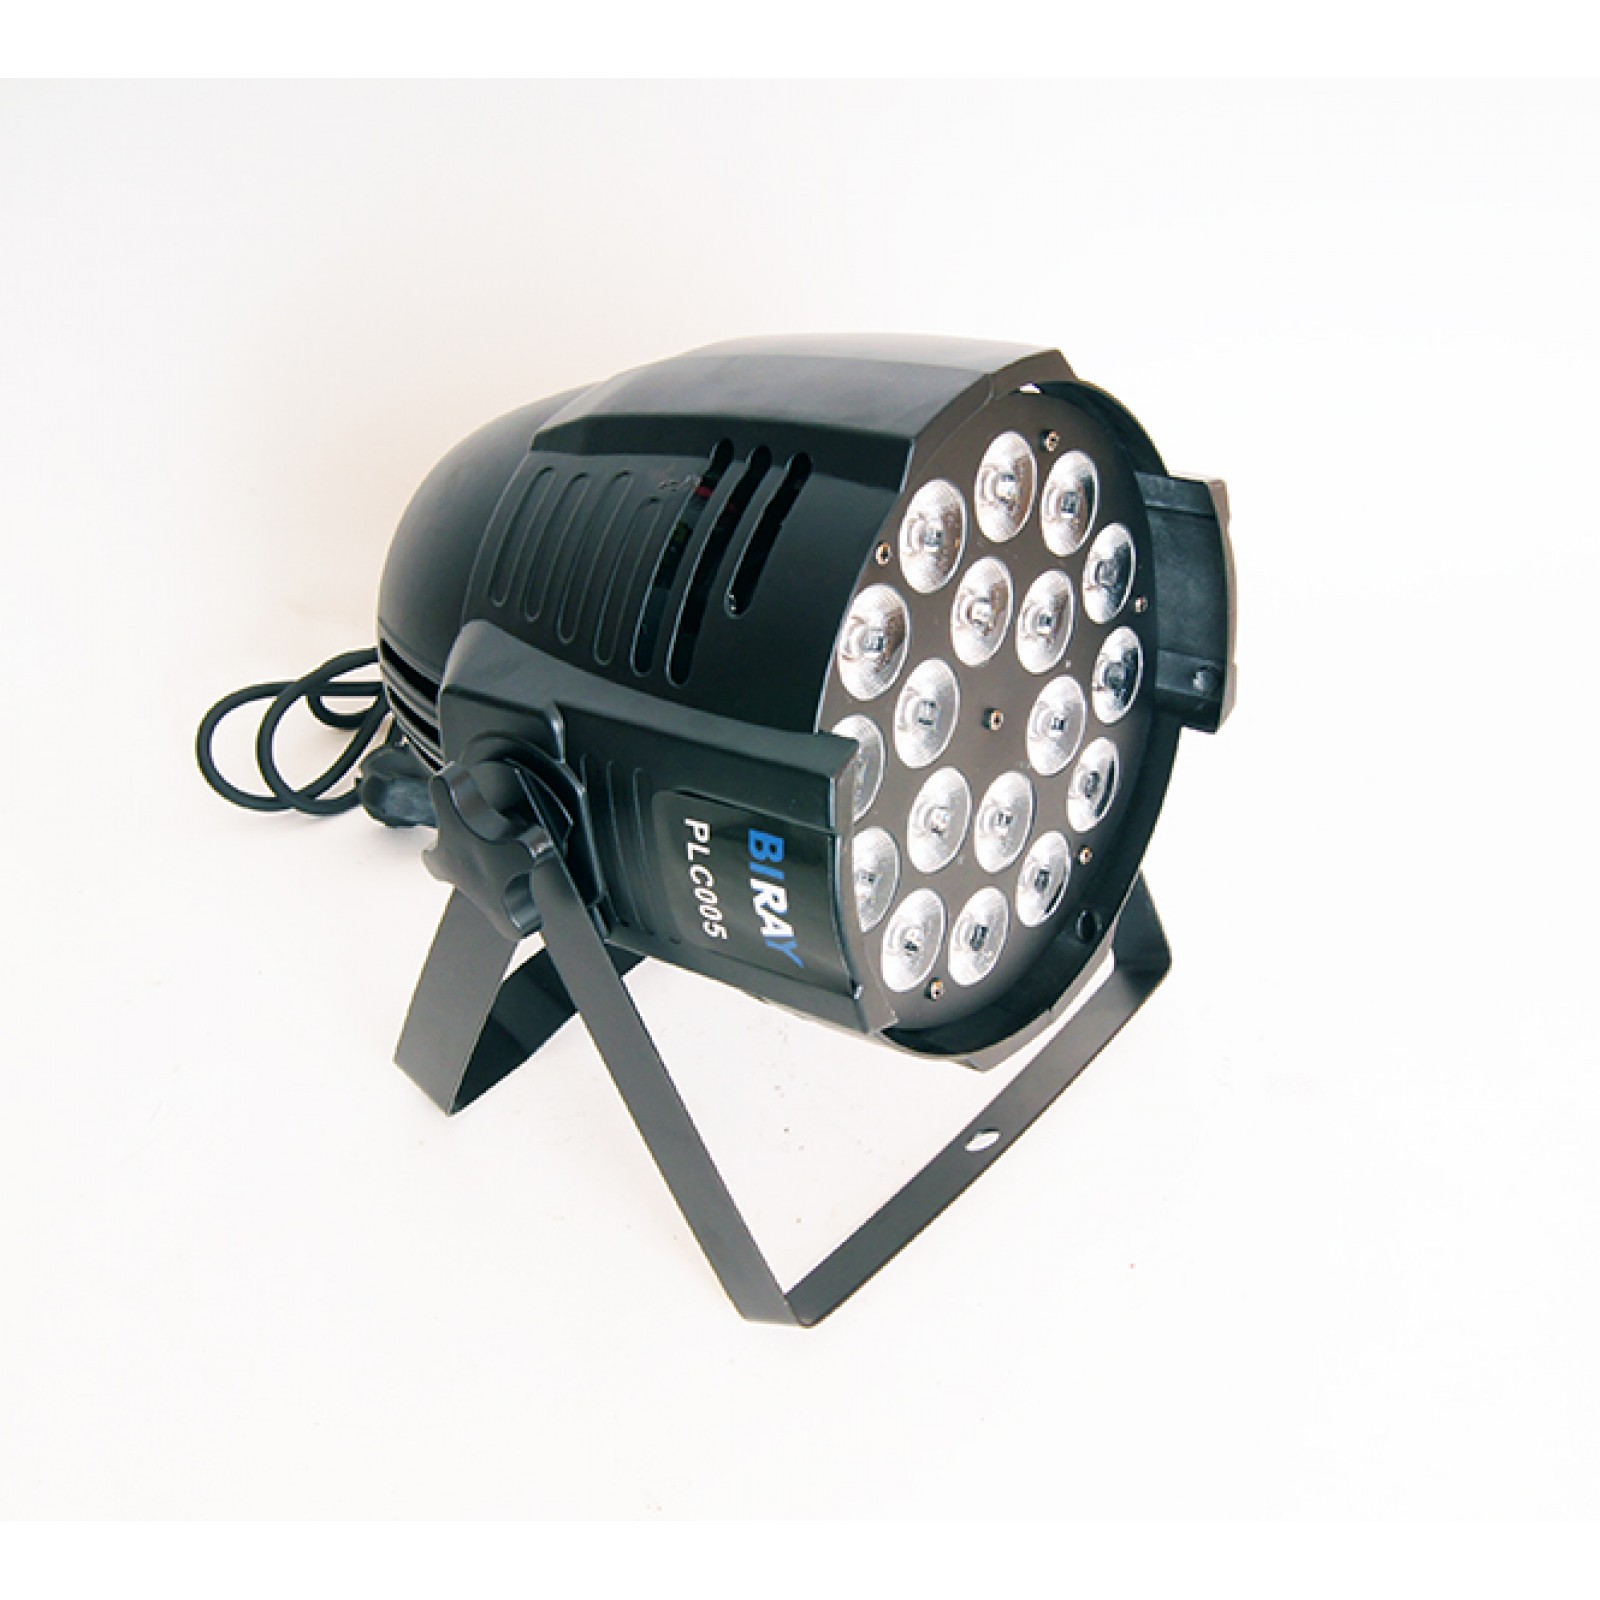 Rgbwa прожектор. Bi ray plc006 светодиодный прожектор. Прожектор big Dipper lp005. Par led bi ray plc002-c. Pl005 светодиодный прожектор, RGBW 54х0.5Вт, bi ray.